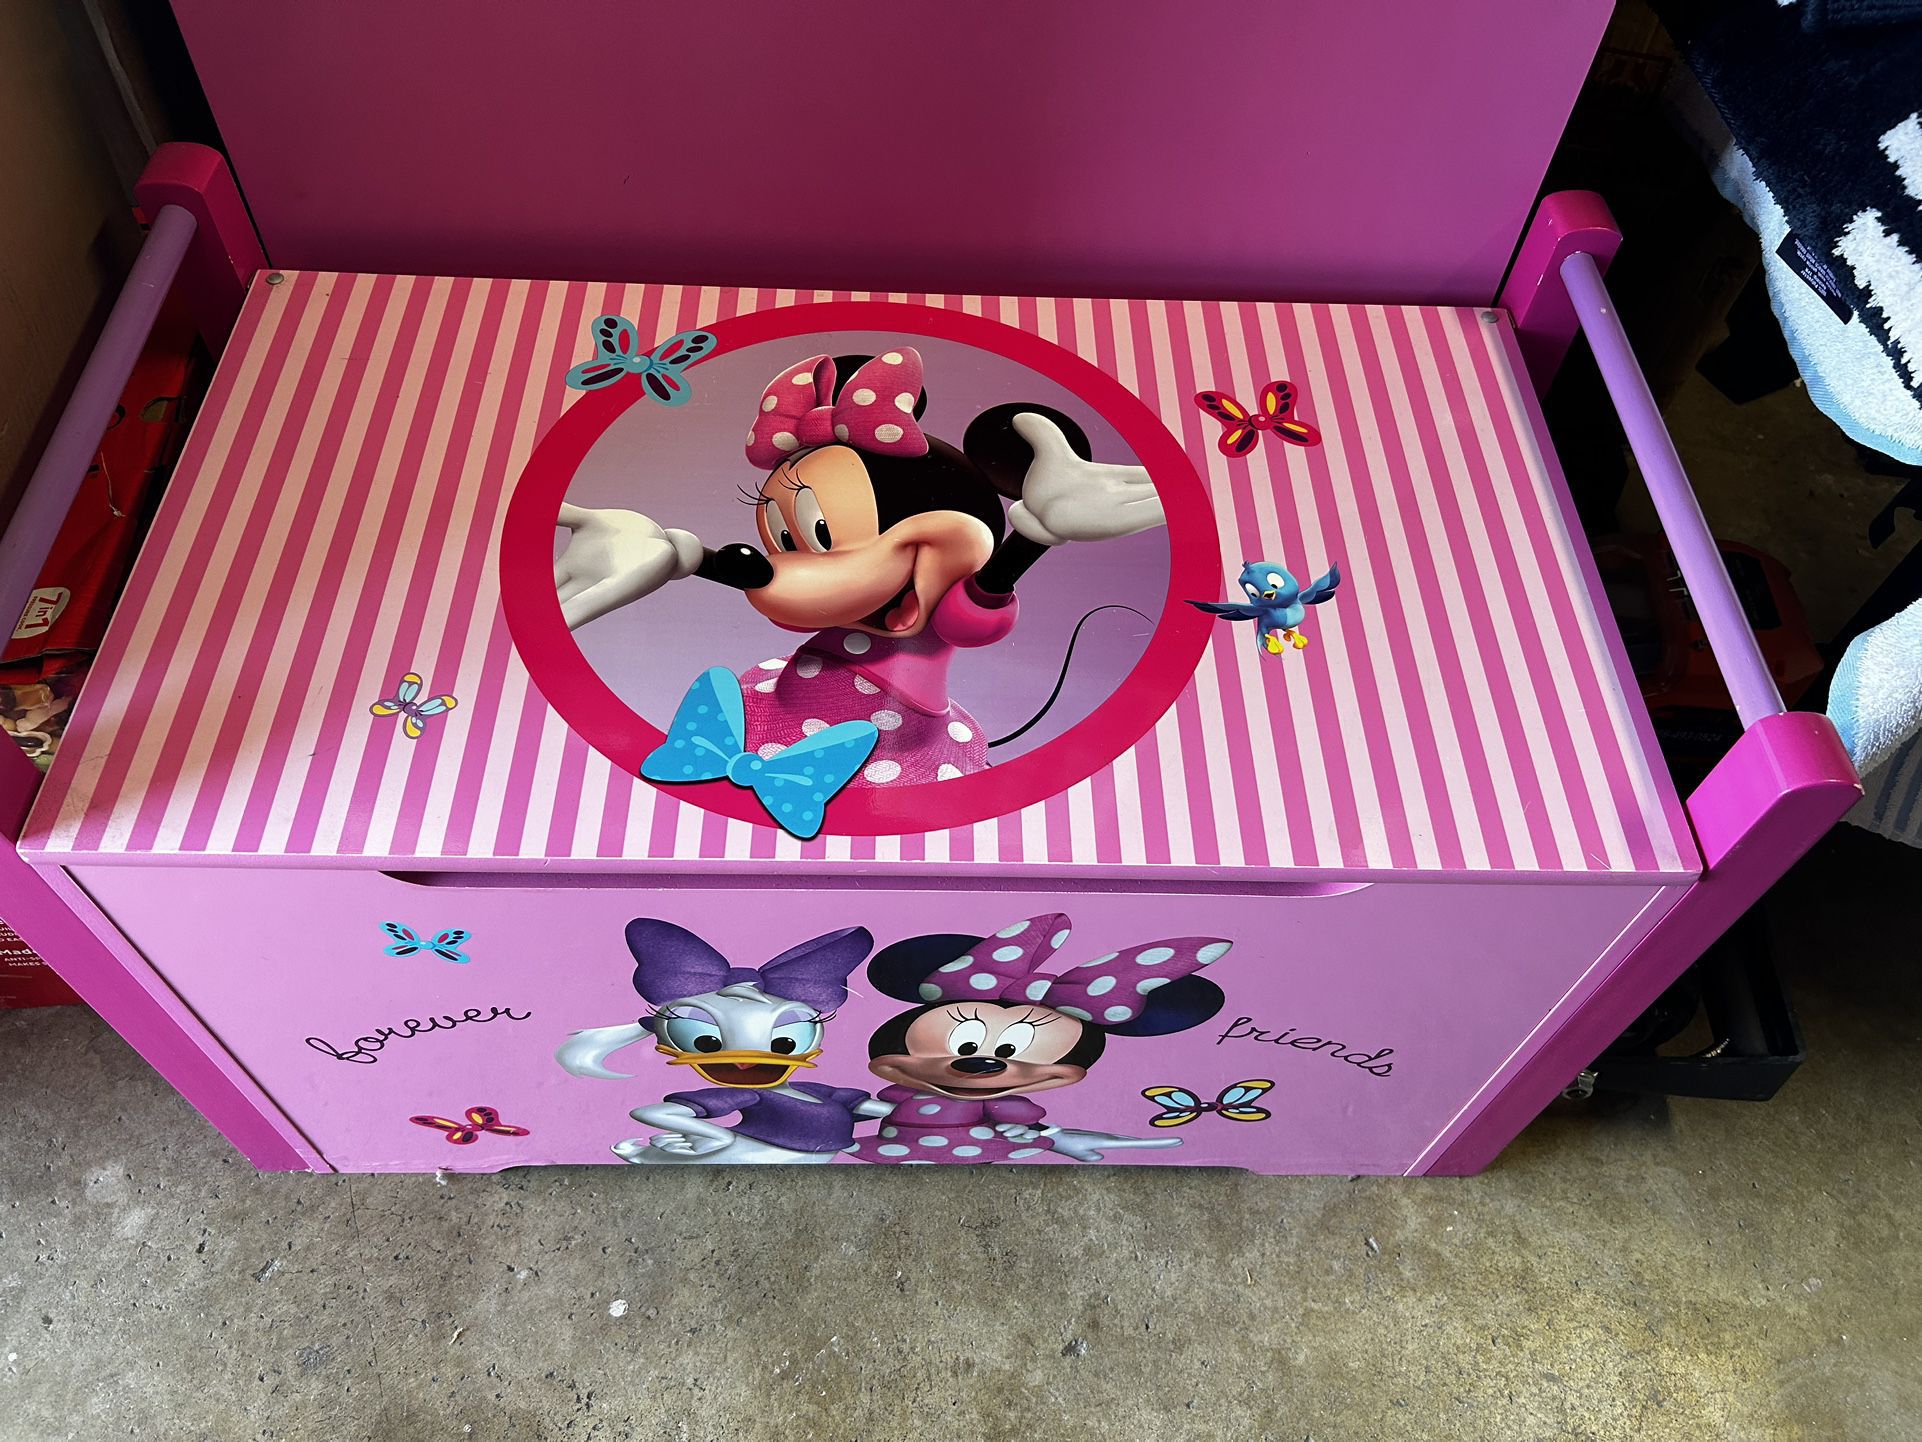 Disney Minnie & DaisyToy box 